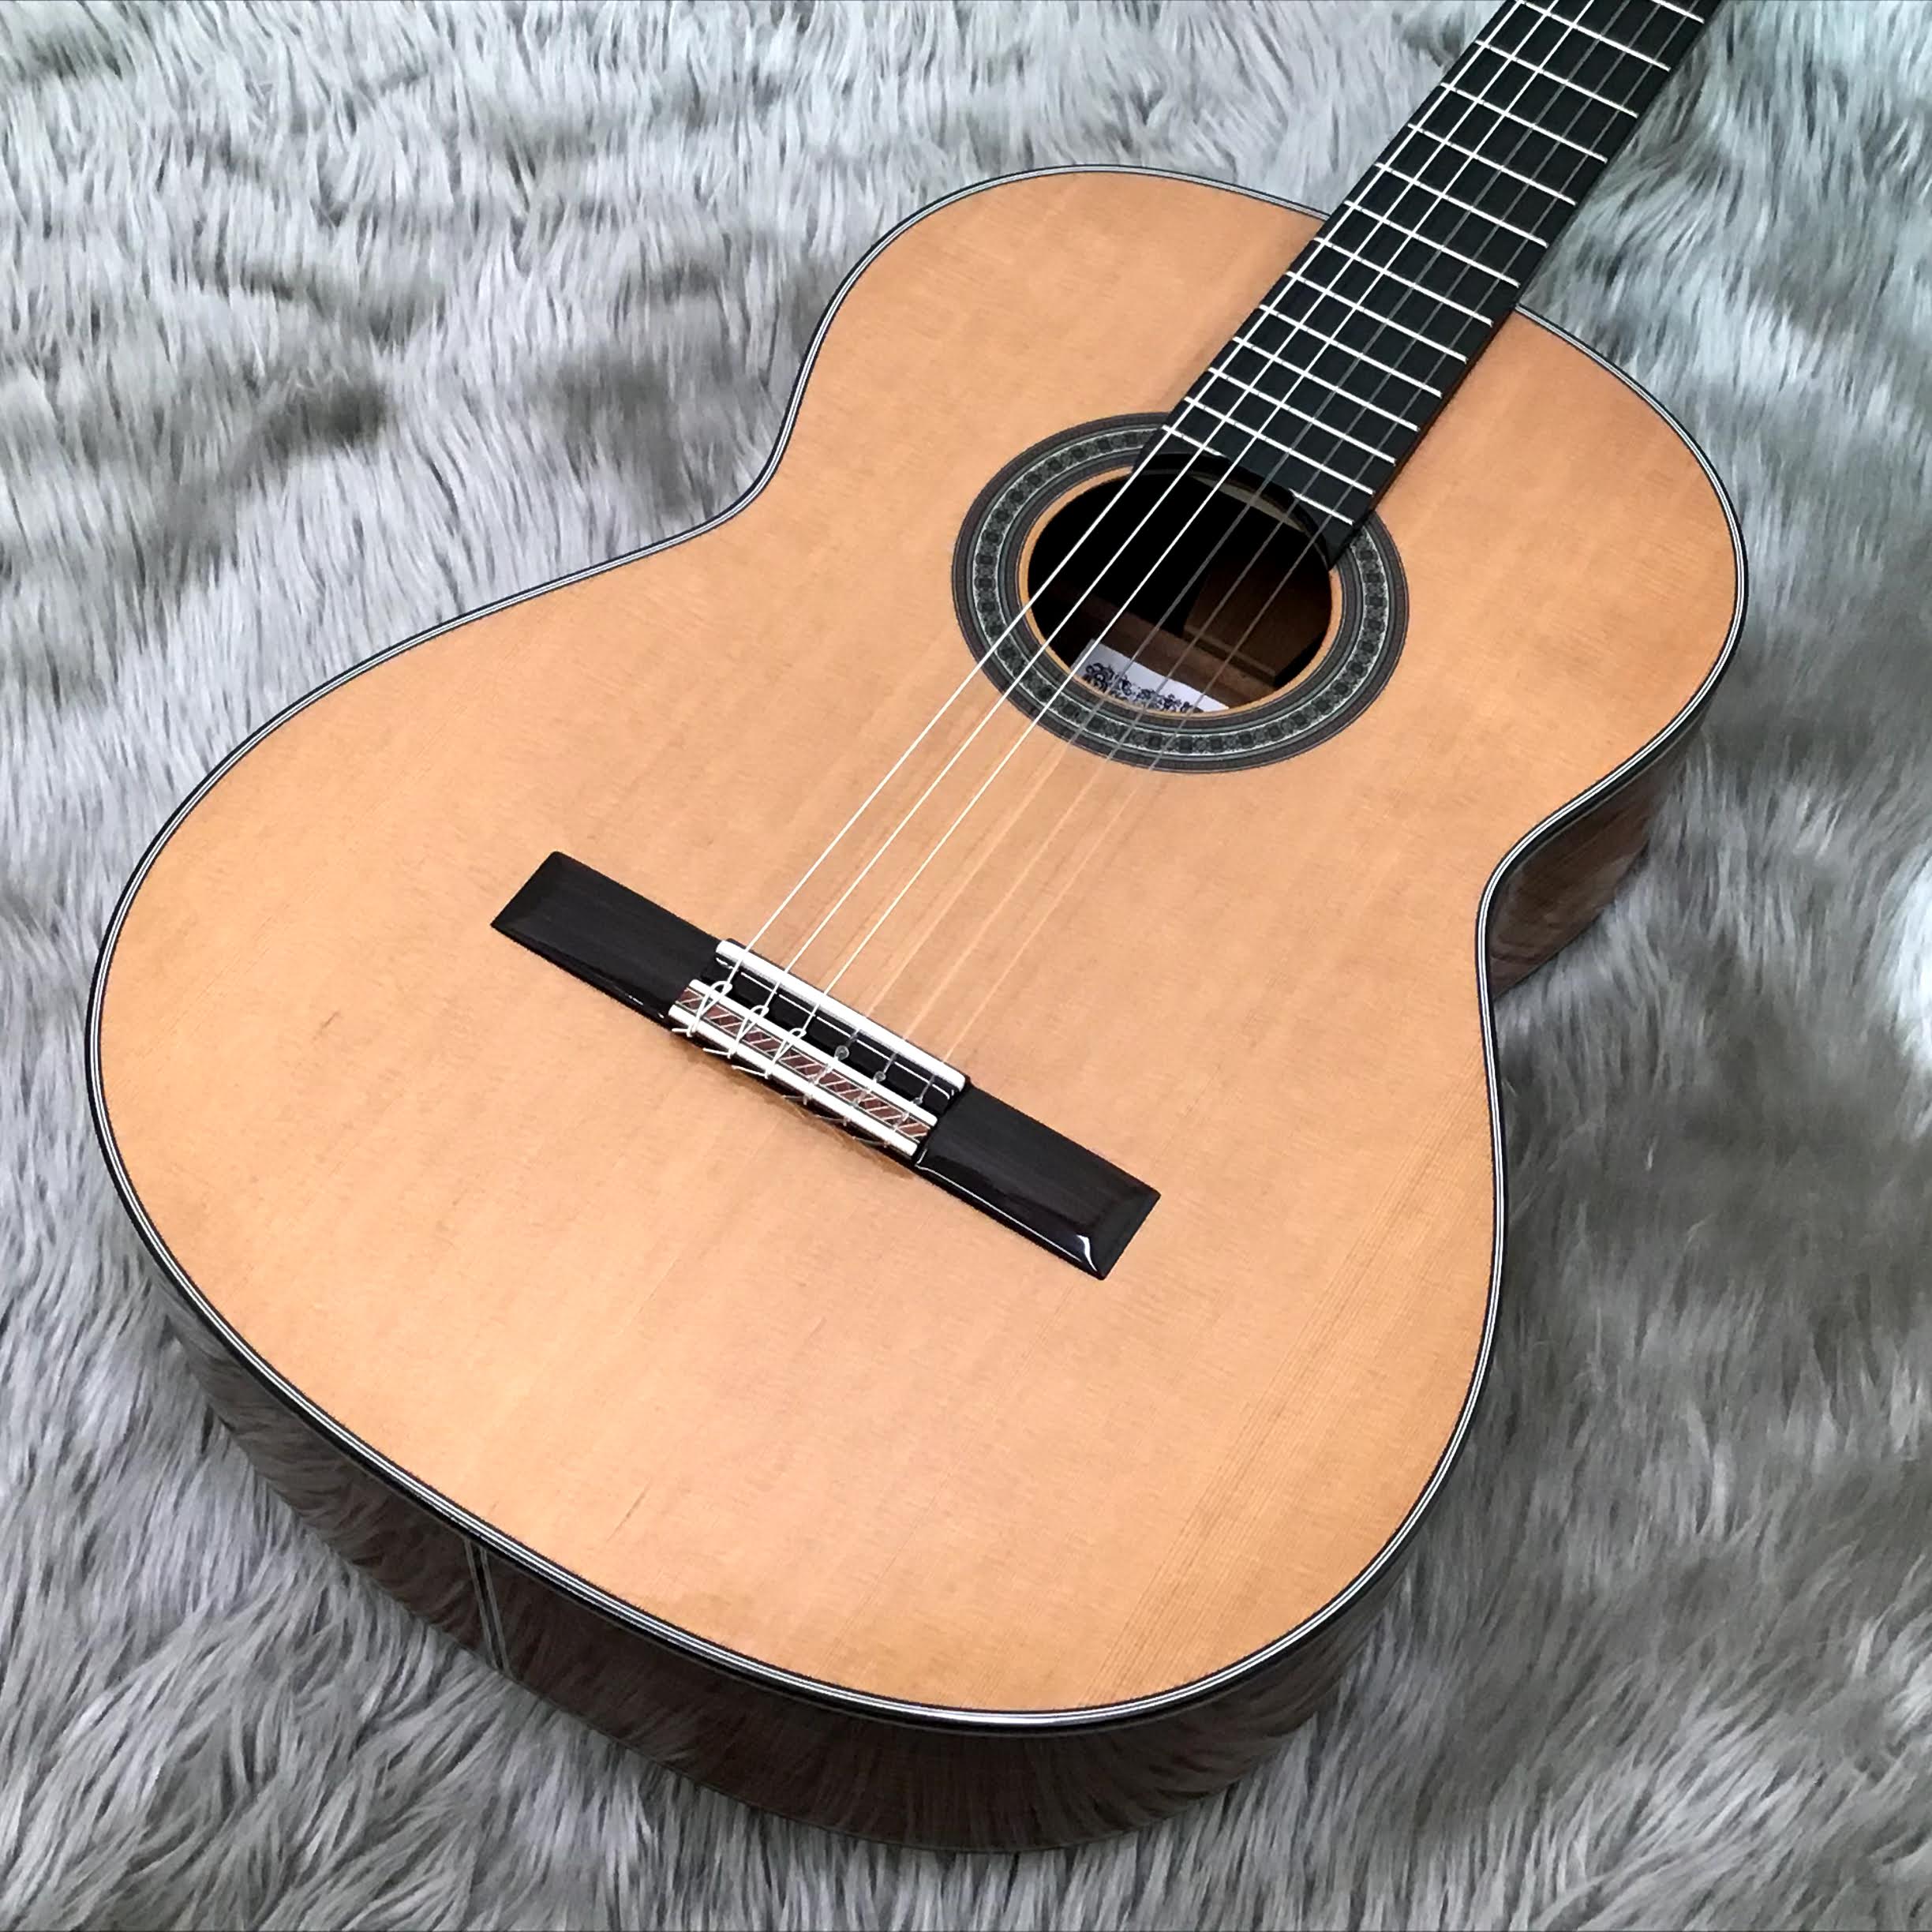 超美品　コダイラ　クラシックギター　初心者向き　購入価格10万円